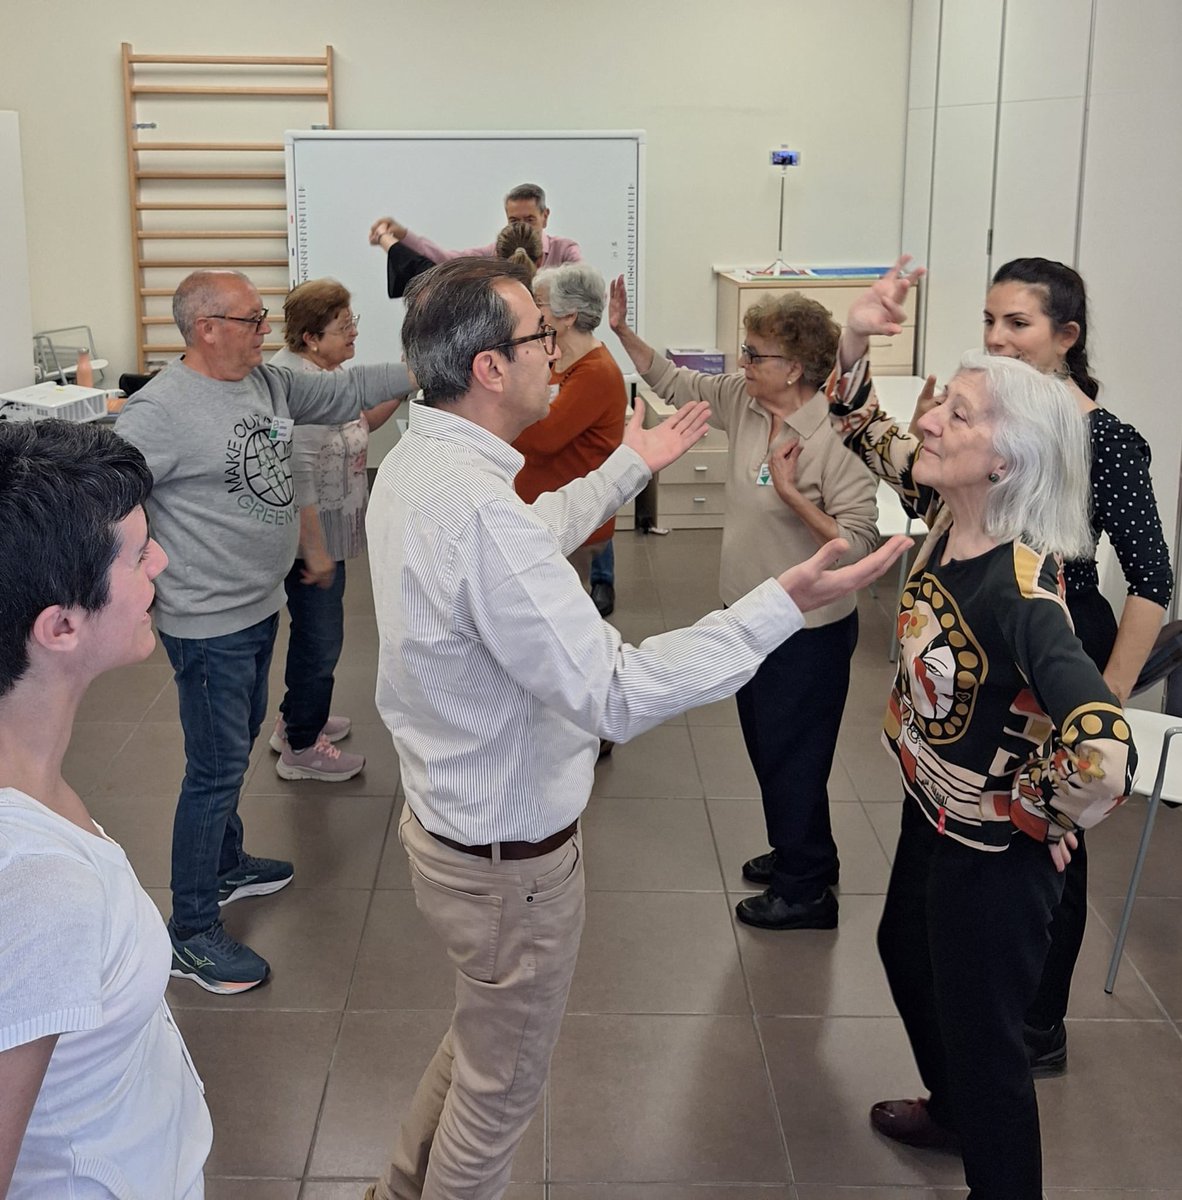 El itinerario de danza social visita AFAV, Asociación de familias de personas con Alzheimer de València. La alumna Ana Lloris ha impartido una sesión de flamenco creativo. @afavalencia #danzasocial